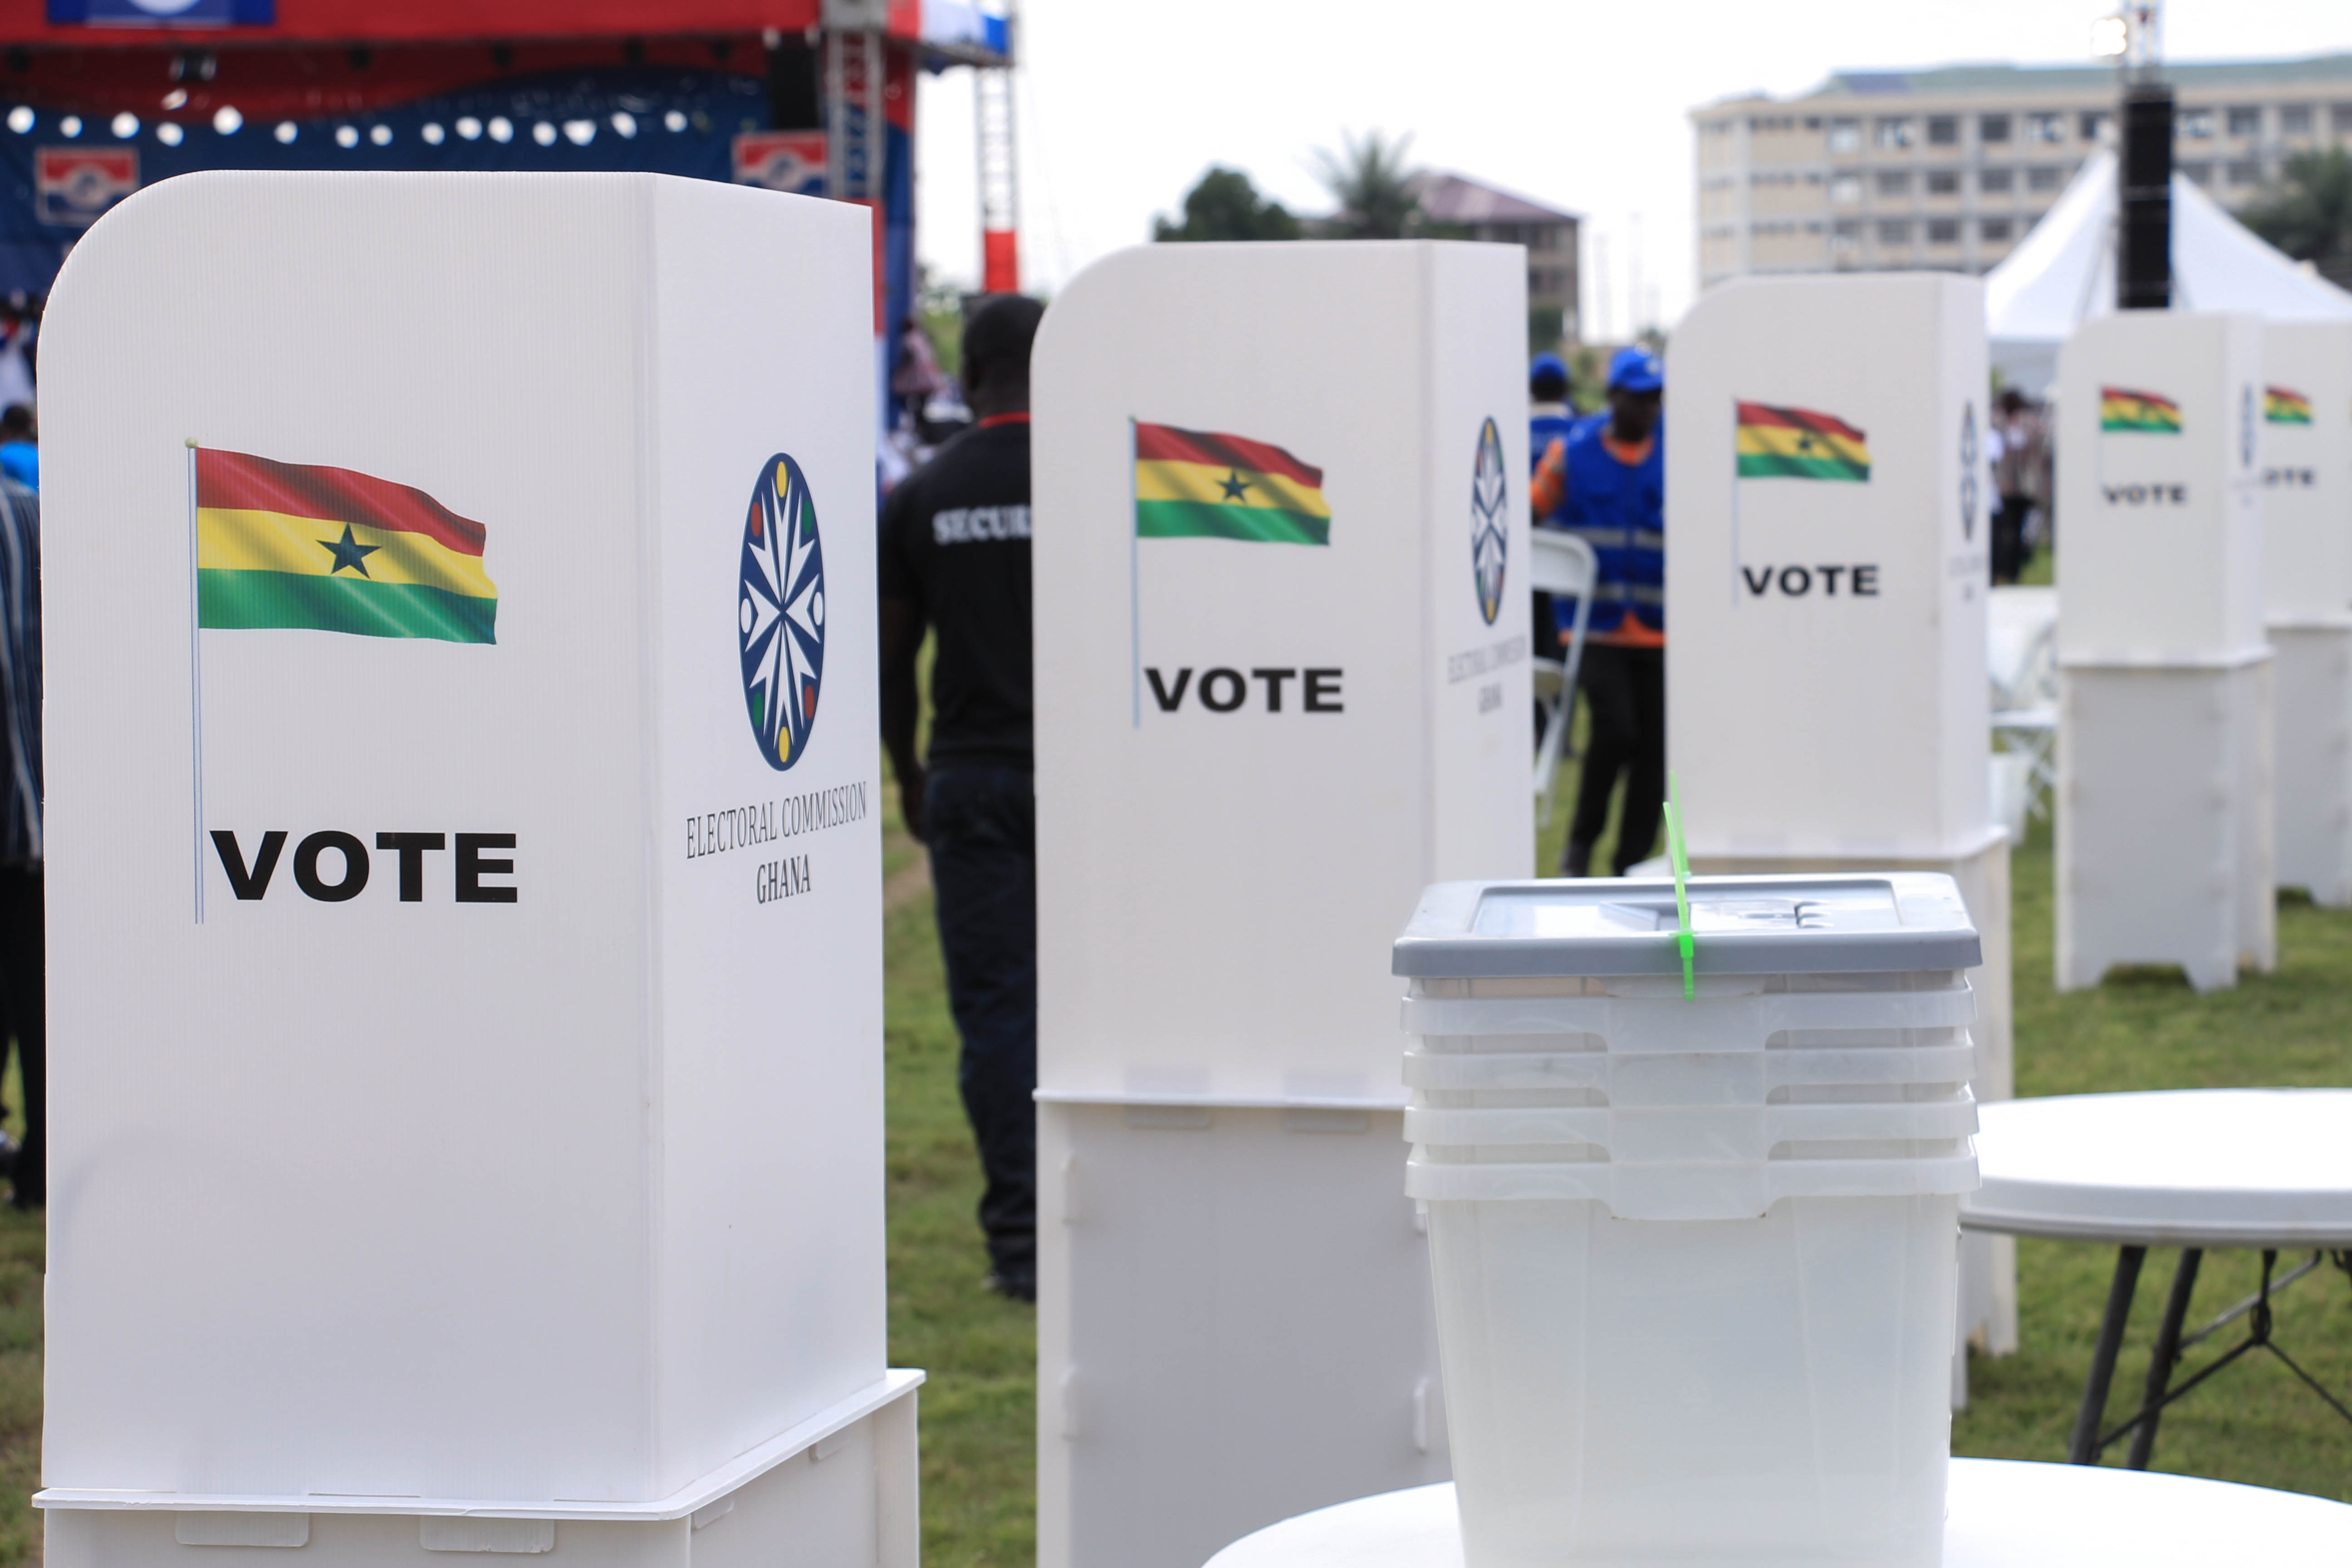 Voting in Ghana